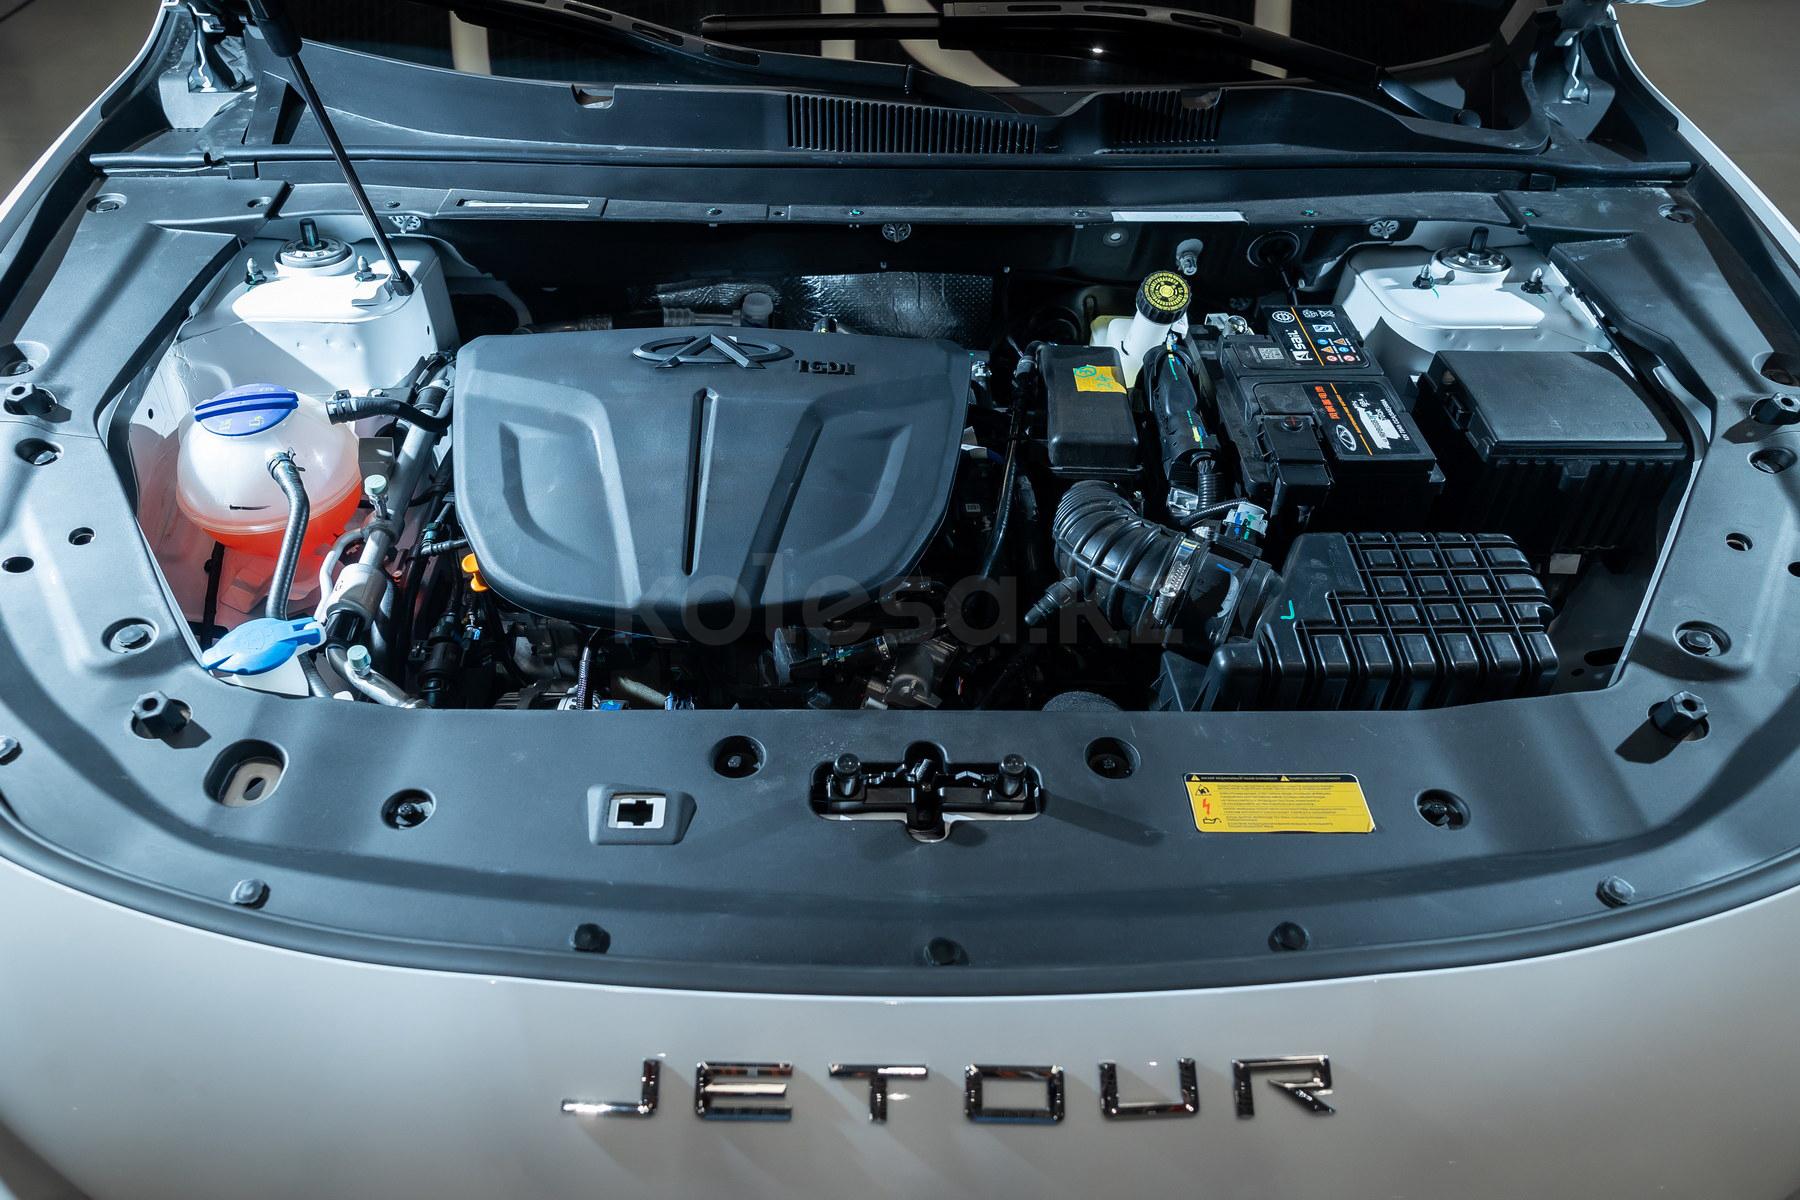 Jetour X70 Plus SUV 2020 - н.в. года от 11 690 000 тенге